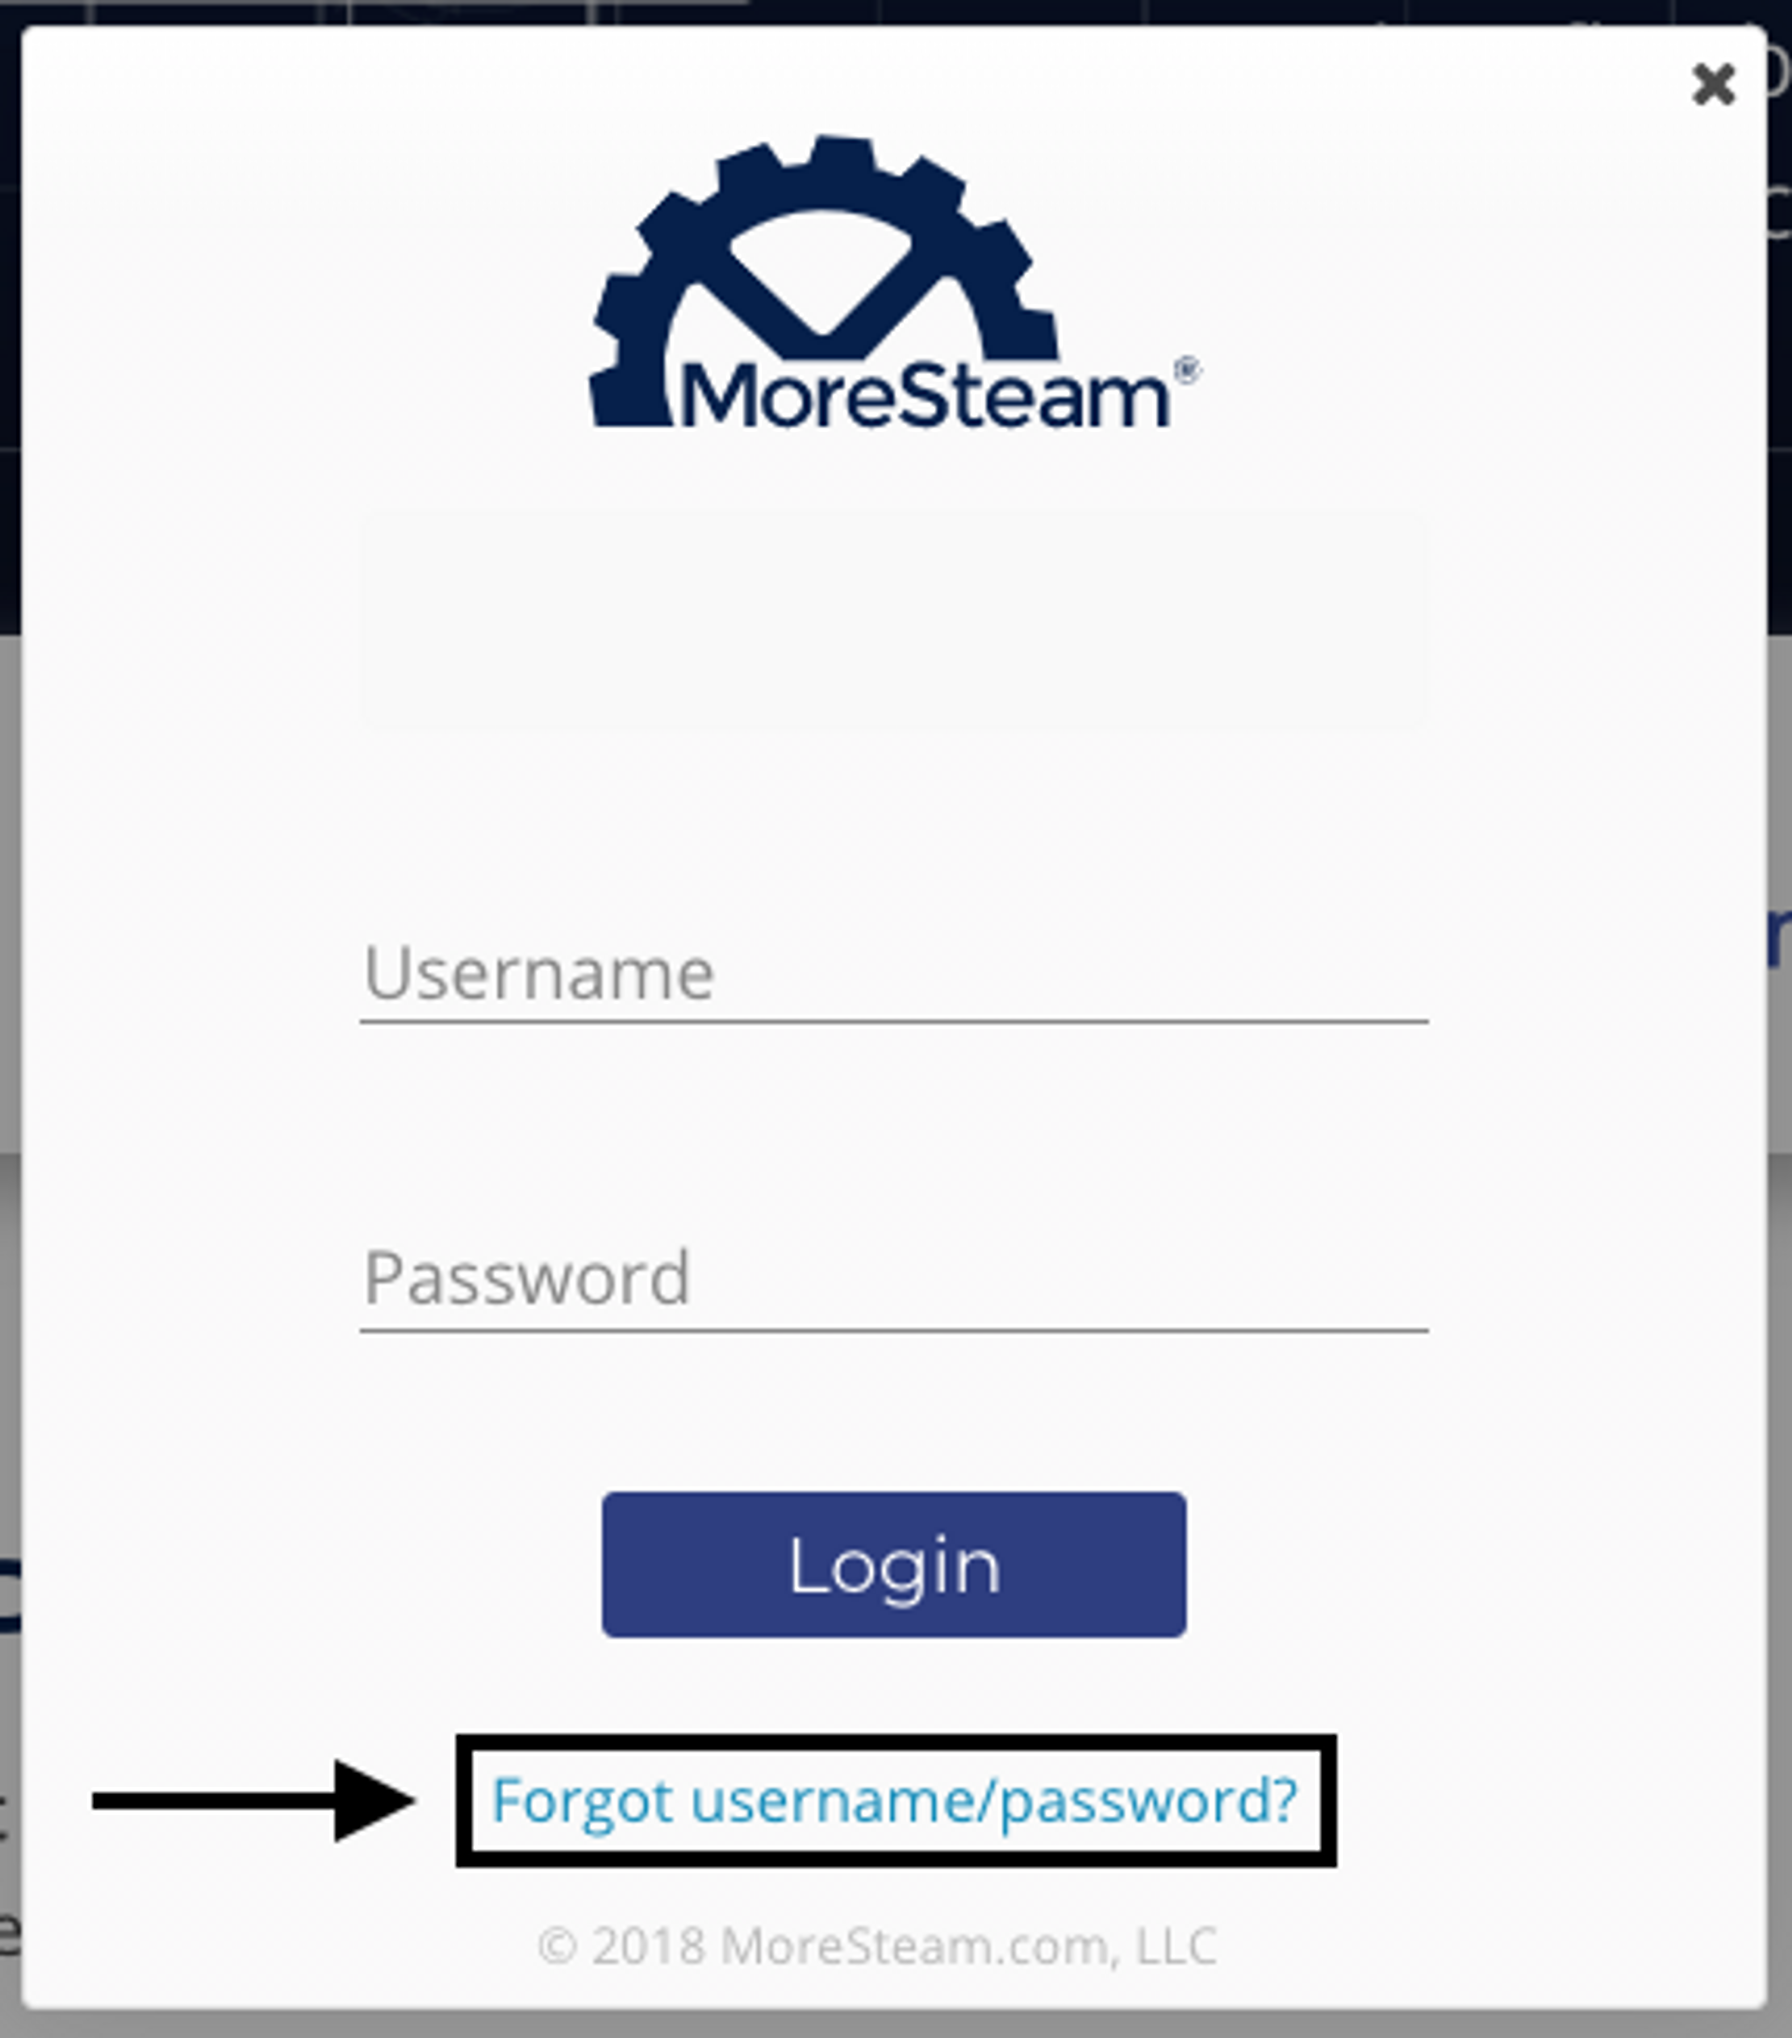 forgot username/password link in login